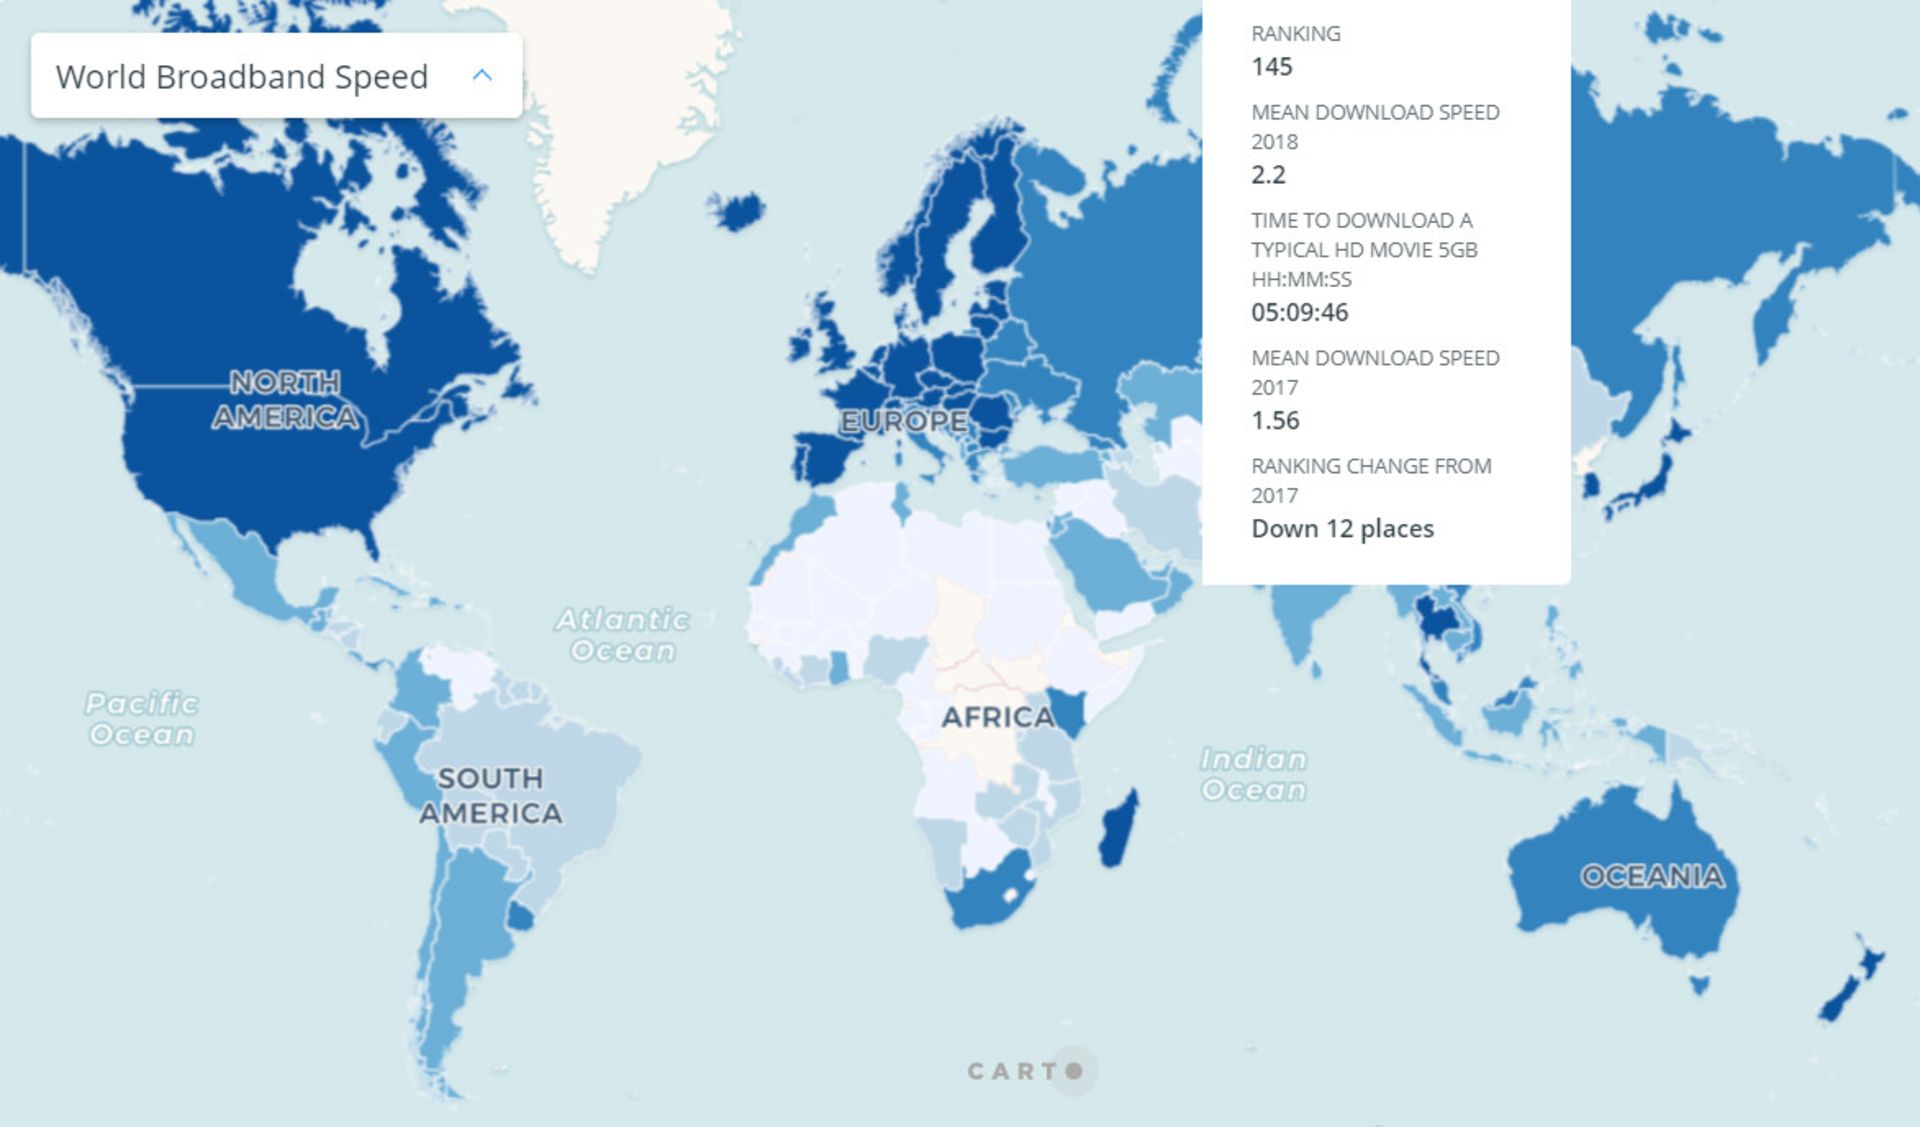 مرجع متخصصين ايران نقشه سرعت اينترنت در كشورهاي جهان